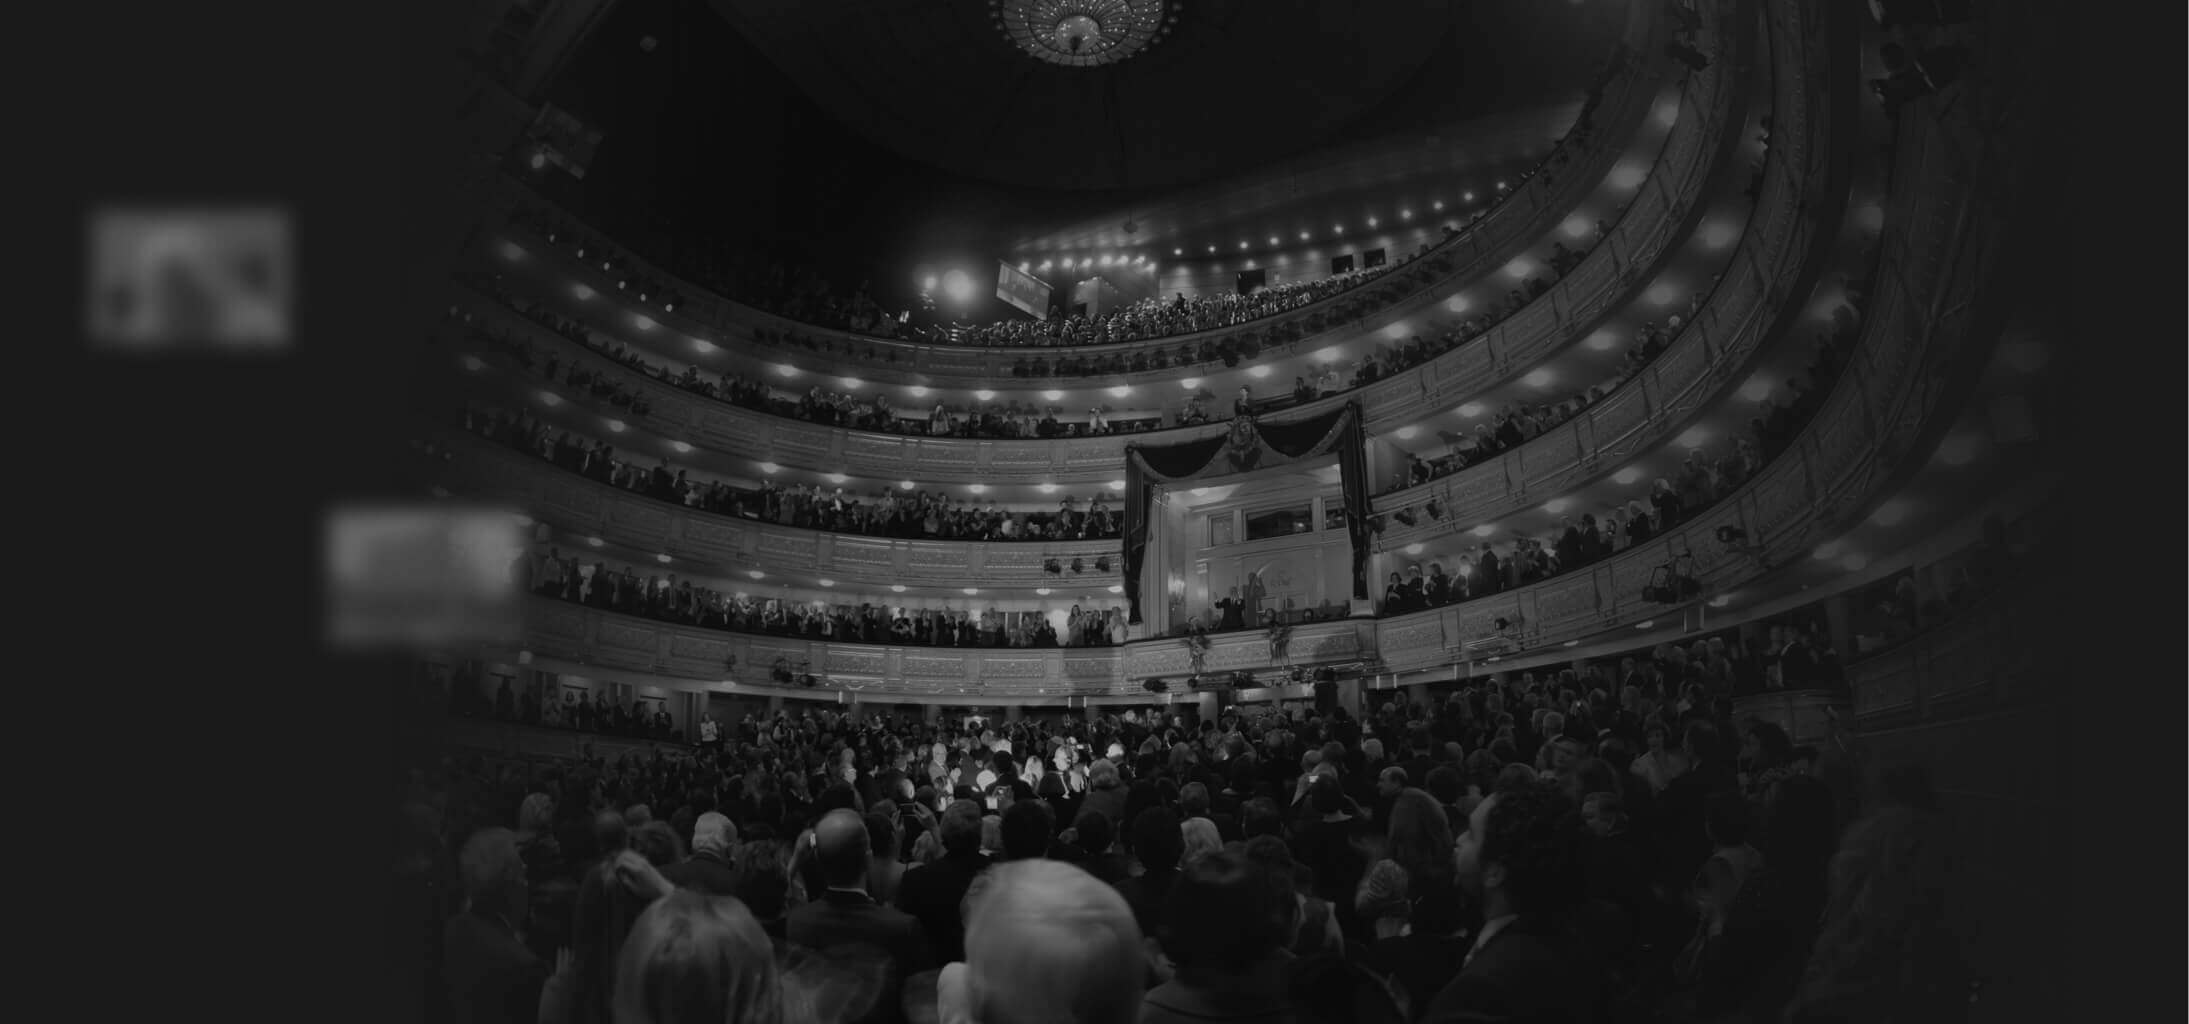 Vista general del Teatro Real en Madrid durante el homenaje al tenor español Plácido Domingo por su 70 cumpleaños (2011).  EFE/Javier del Real